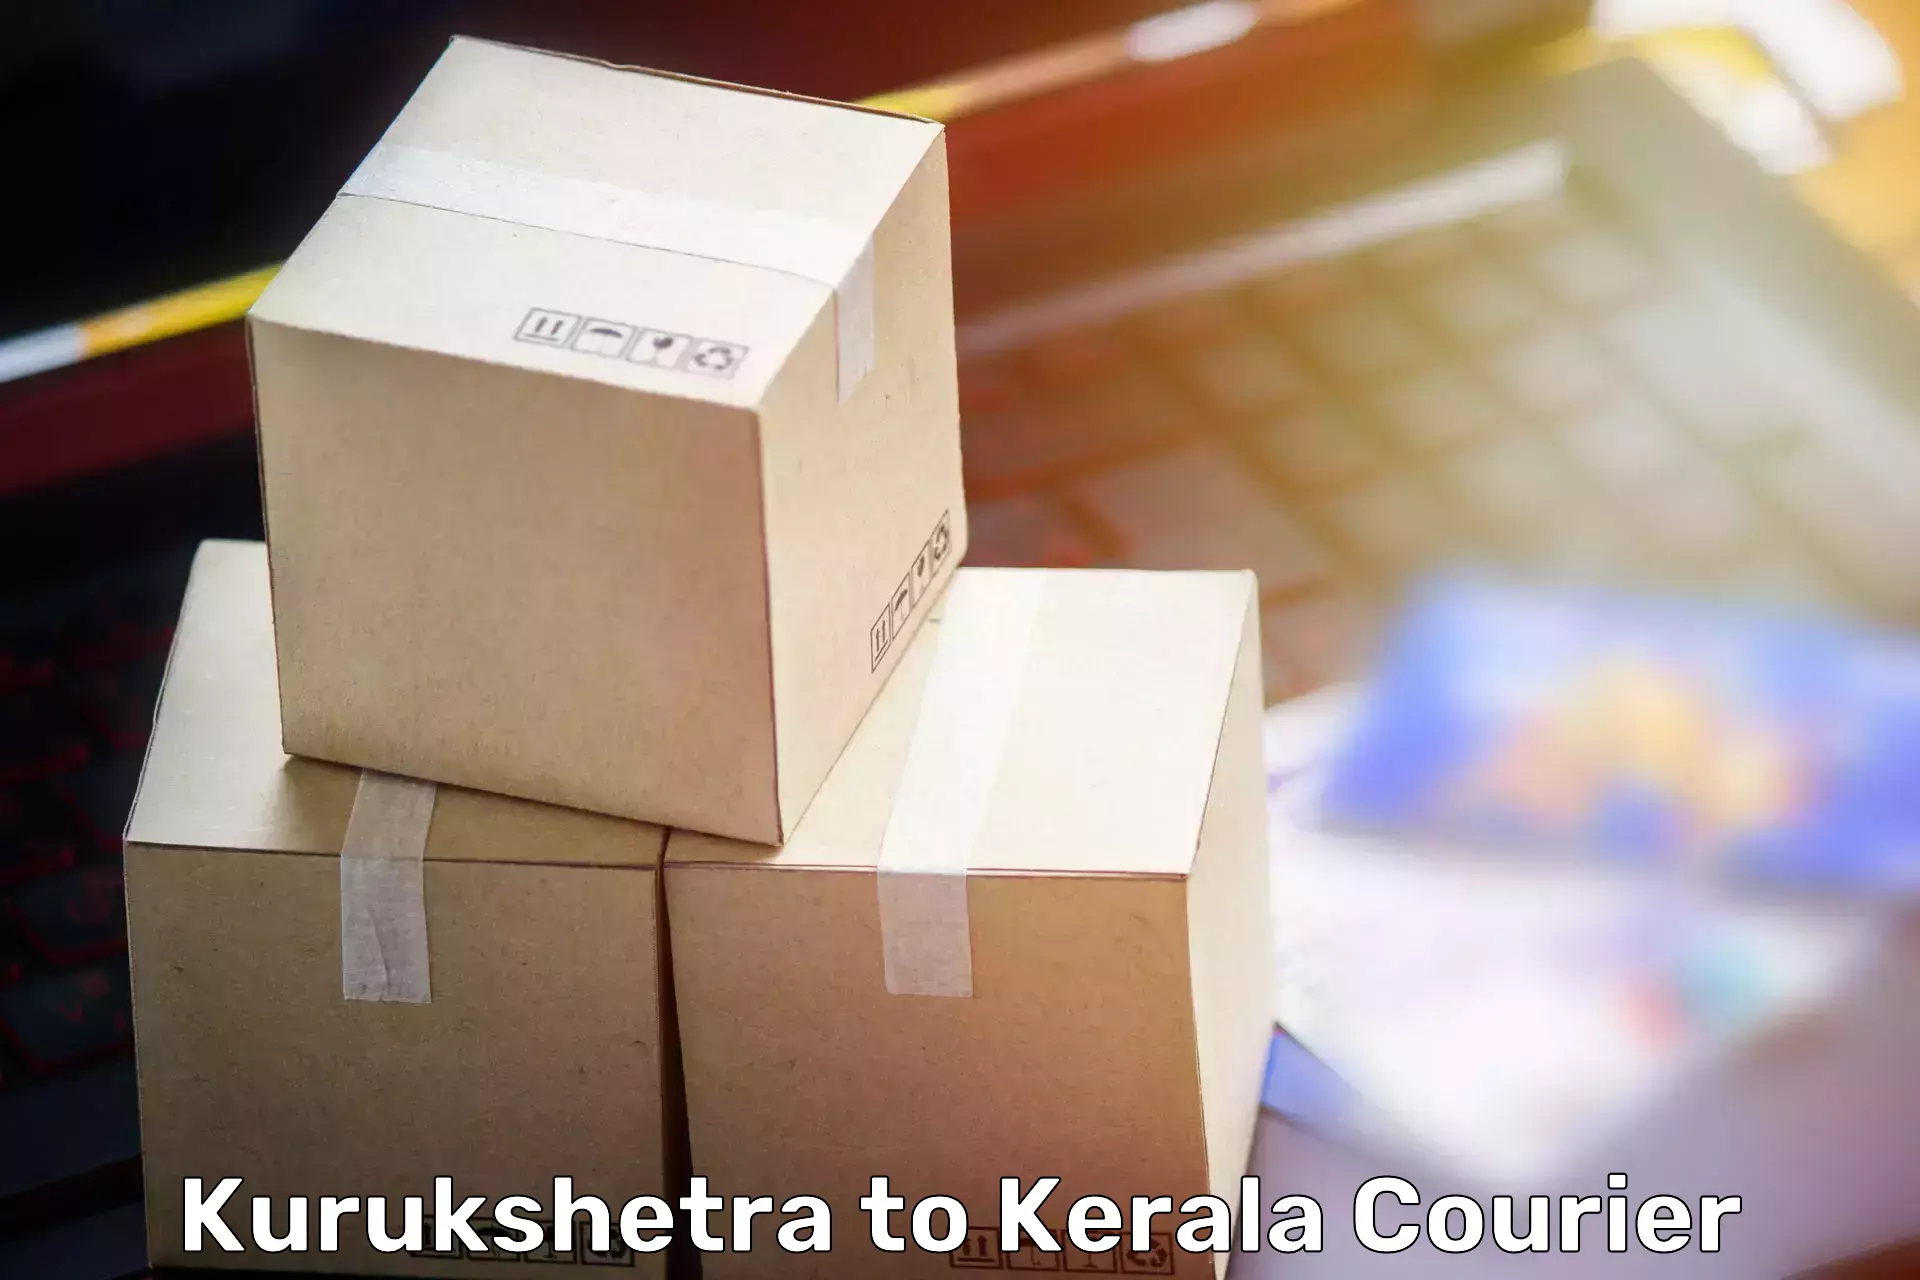 Furniture moving experts Kurukshetra to Mahe